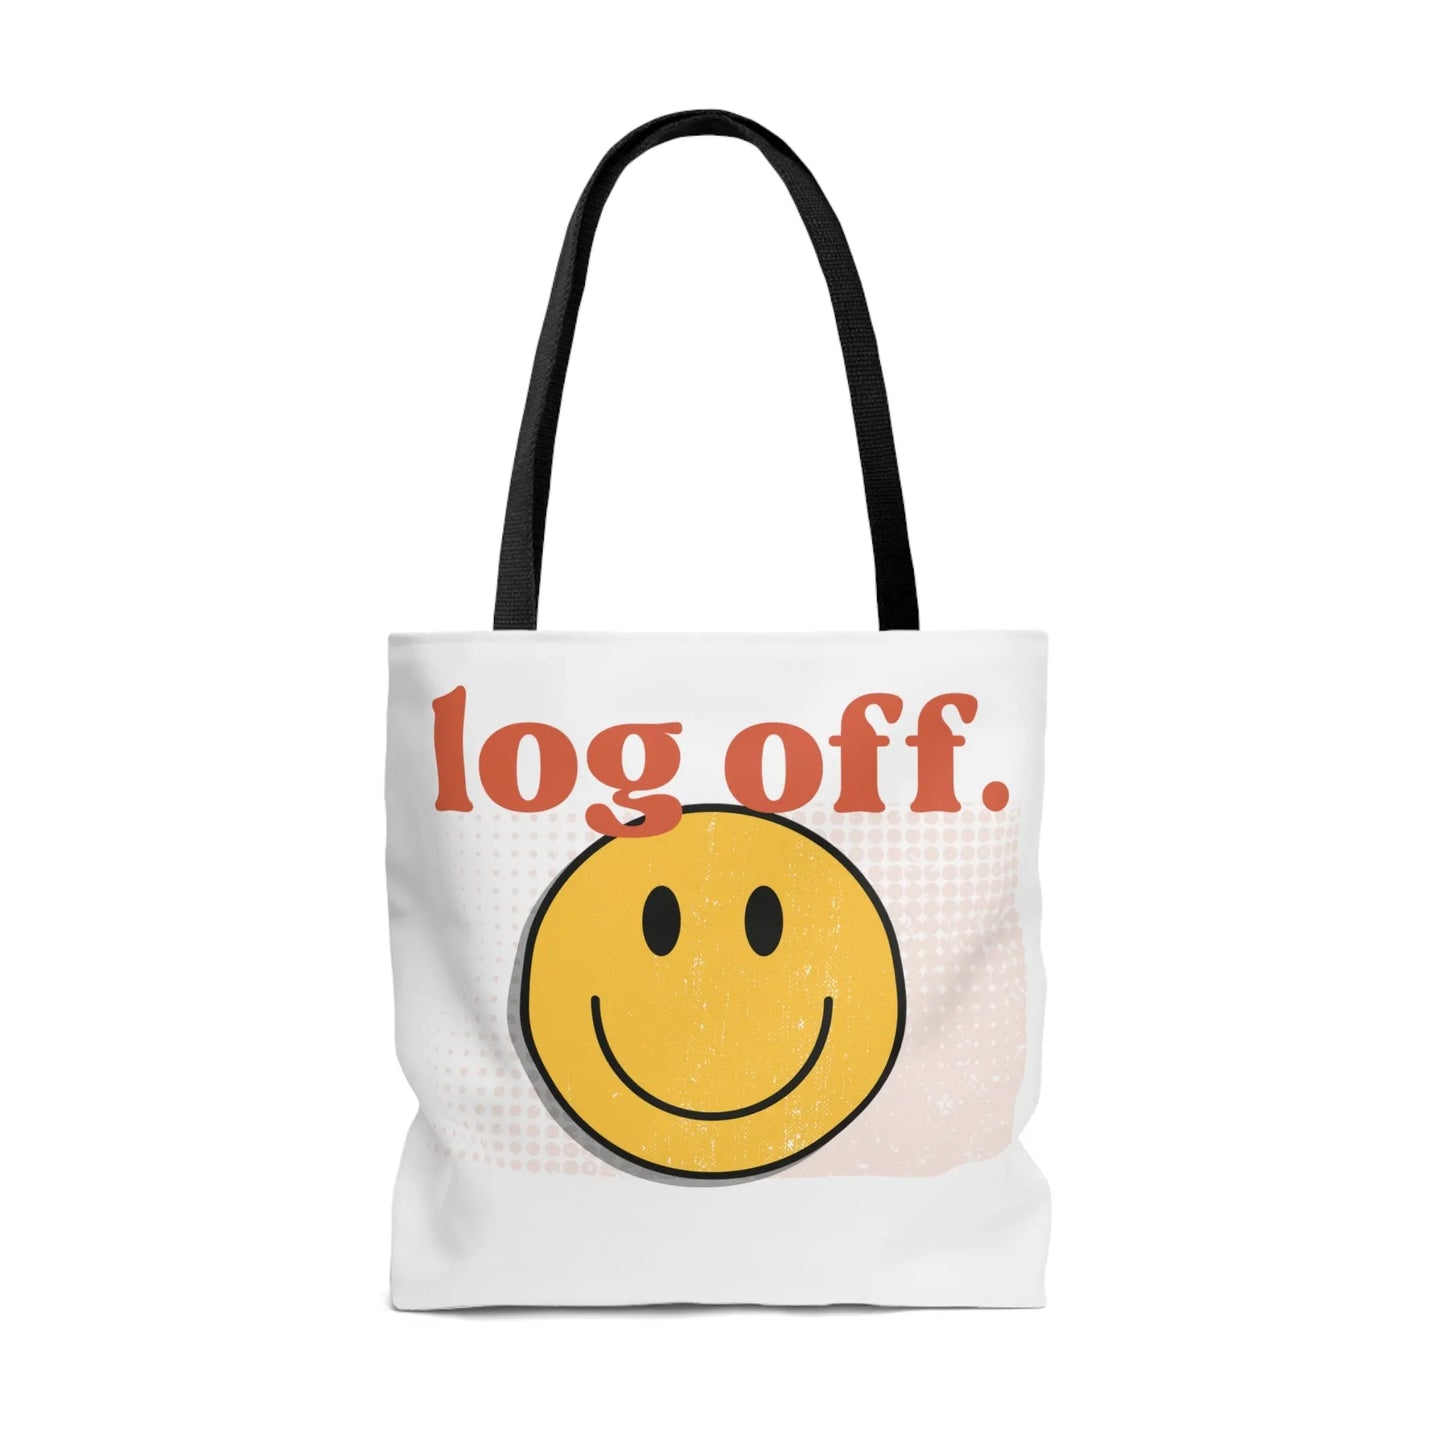 Stay Present with Retro 'Log Off' Smiley Face Bag - papercraneco